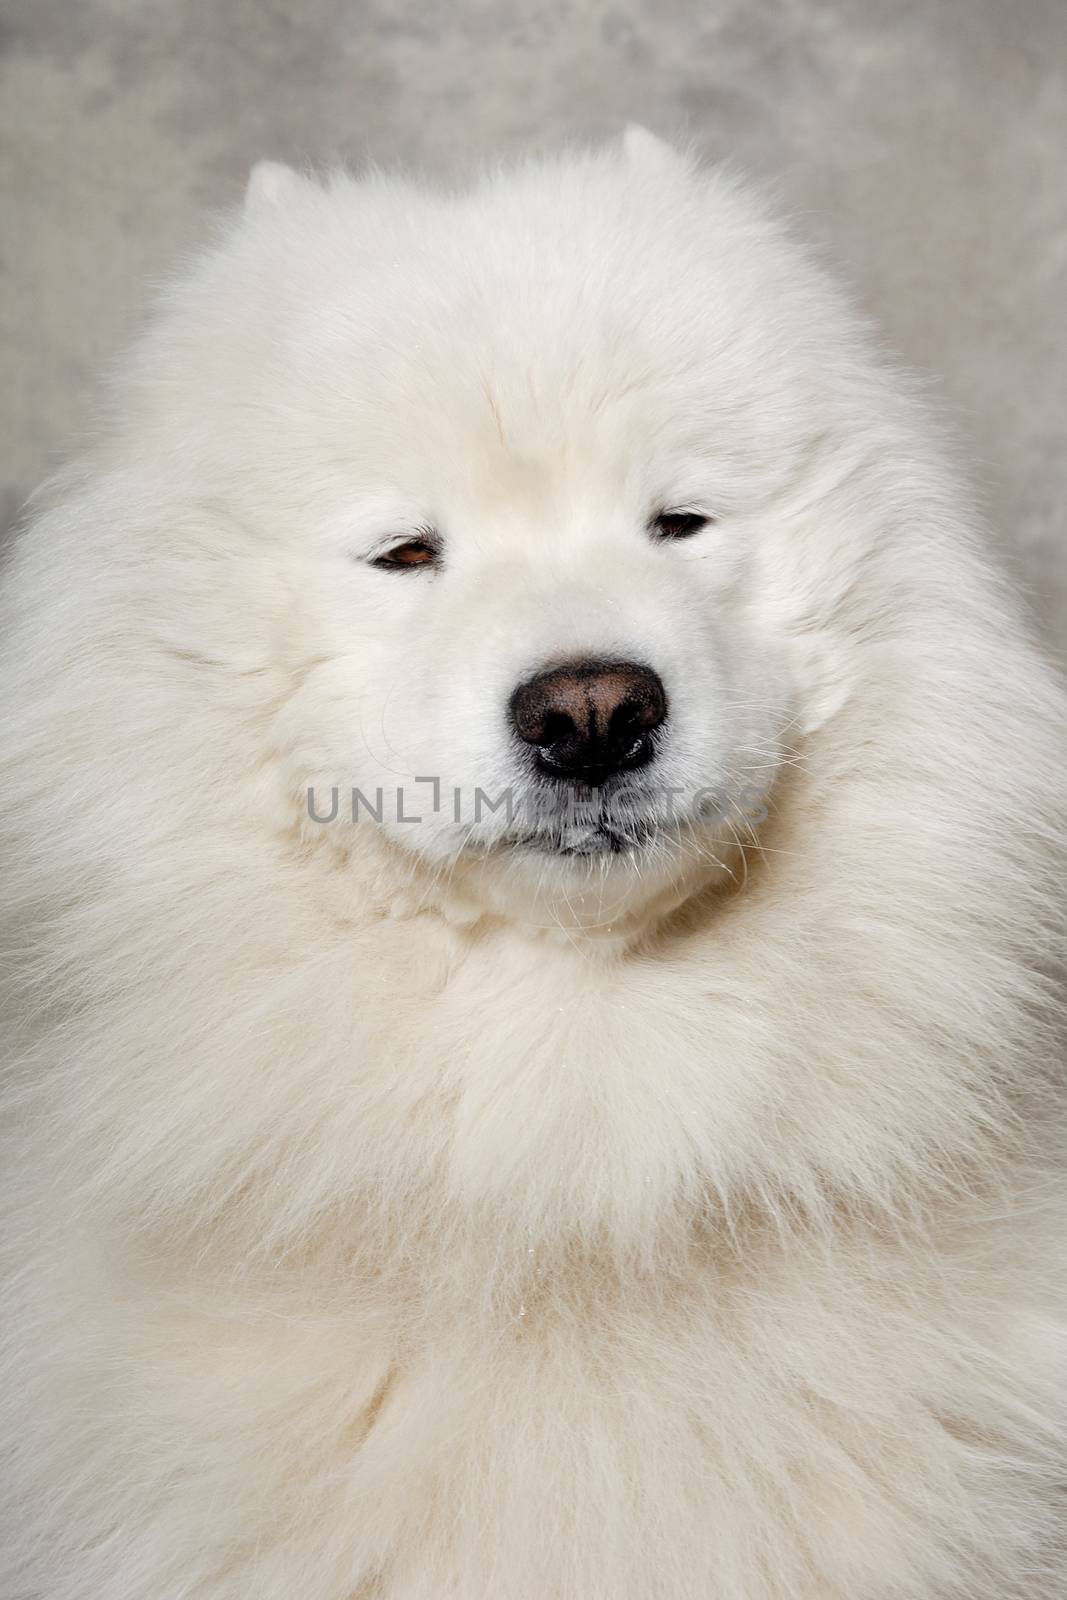 Face of samoyed dog by cfoto